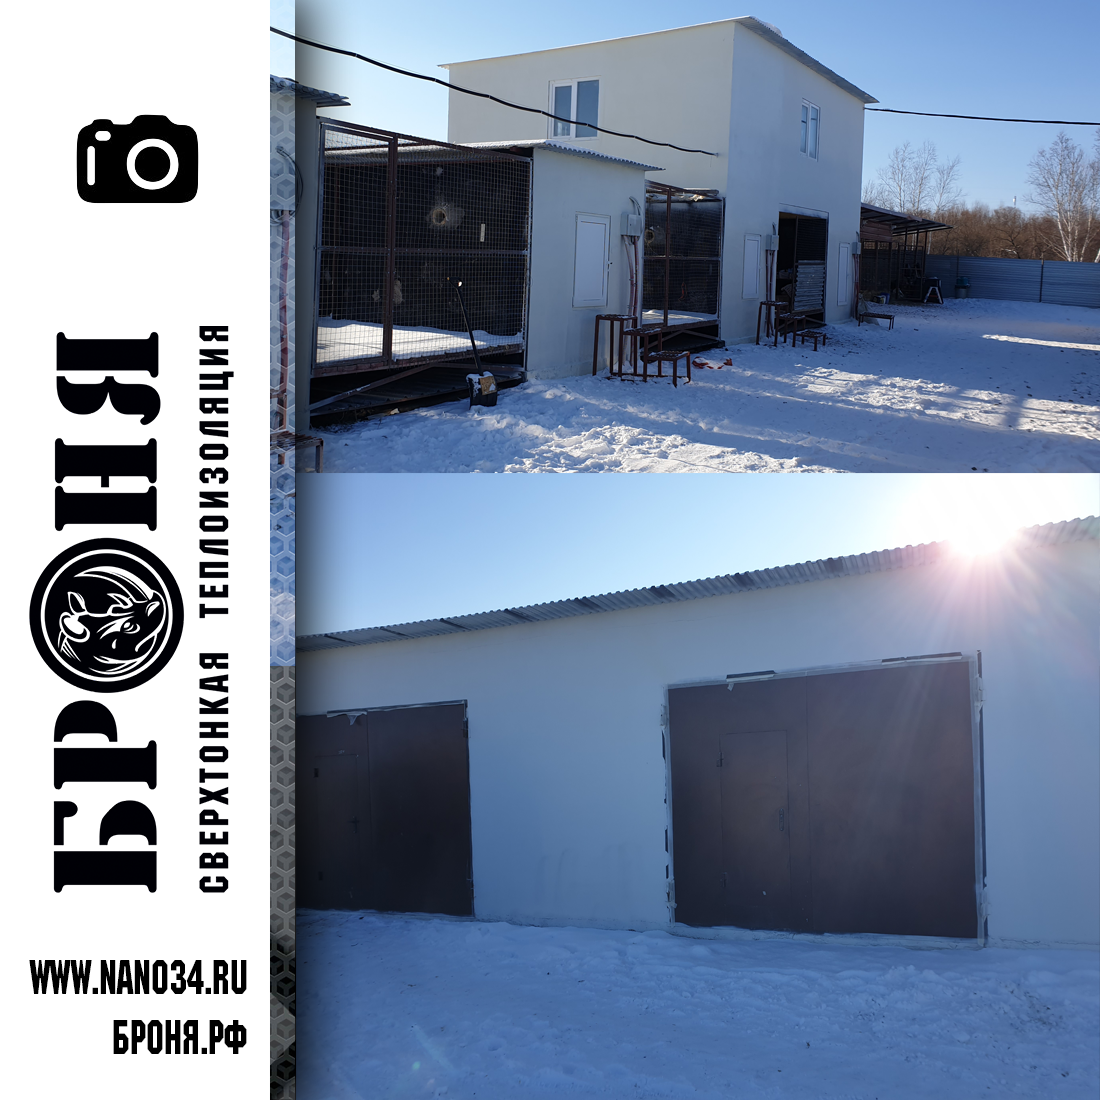 Применение Броня Зима сразу на несколько зданий большой фермы в г. Благовещенск (фото, видео)